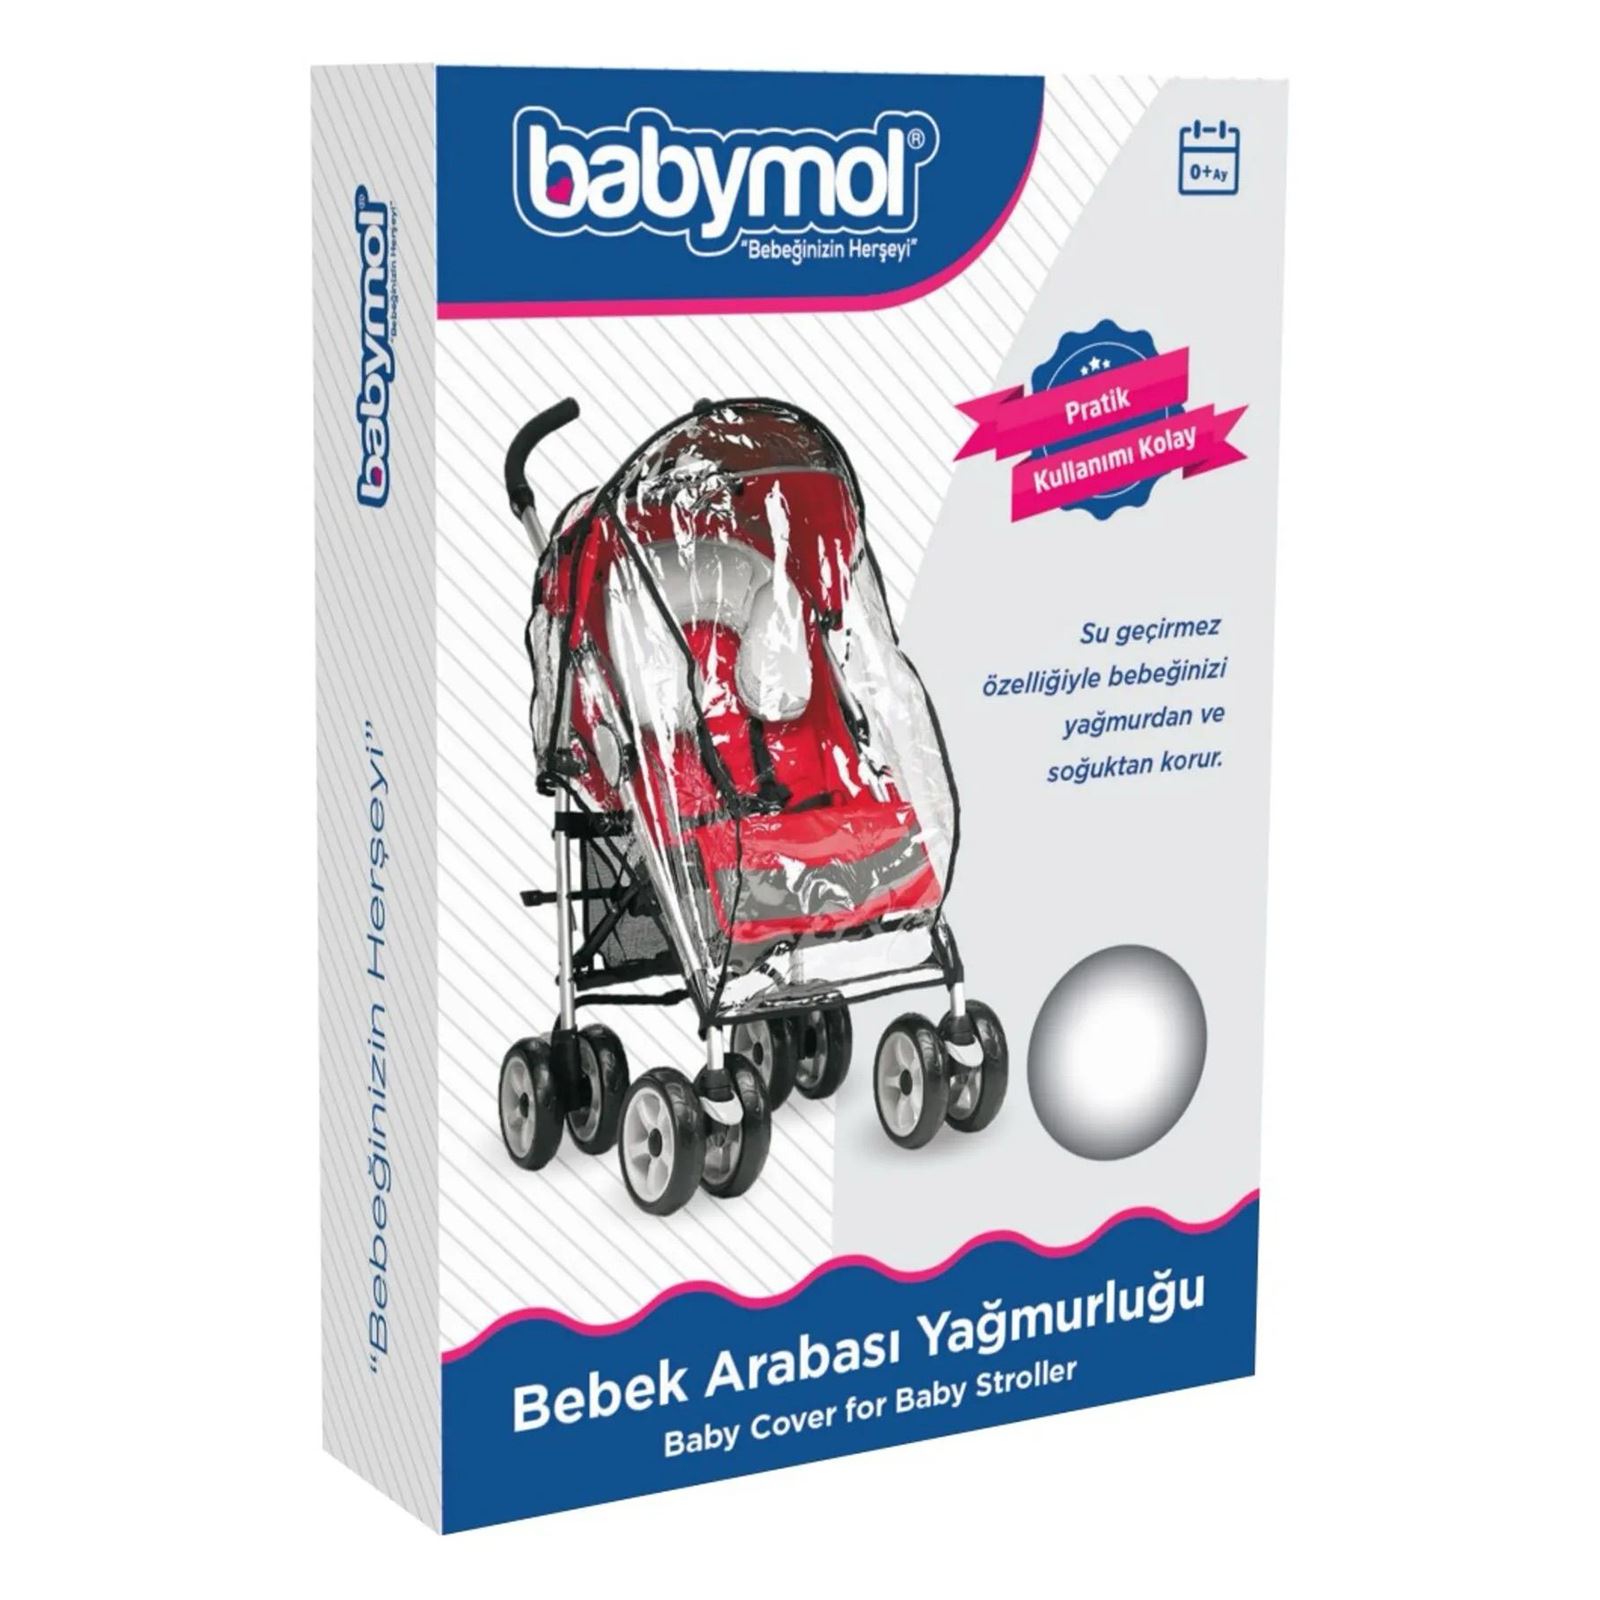 Babymol Lüks Bebek Arabası Yağmurluğu Şeffaf